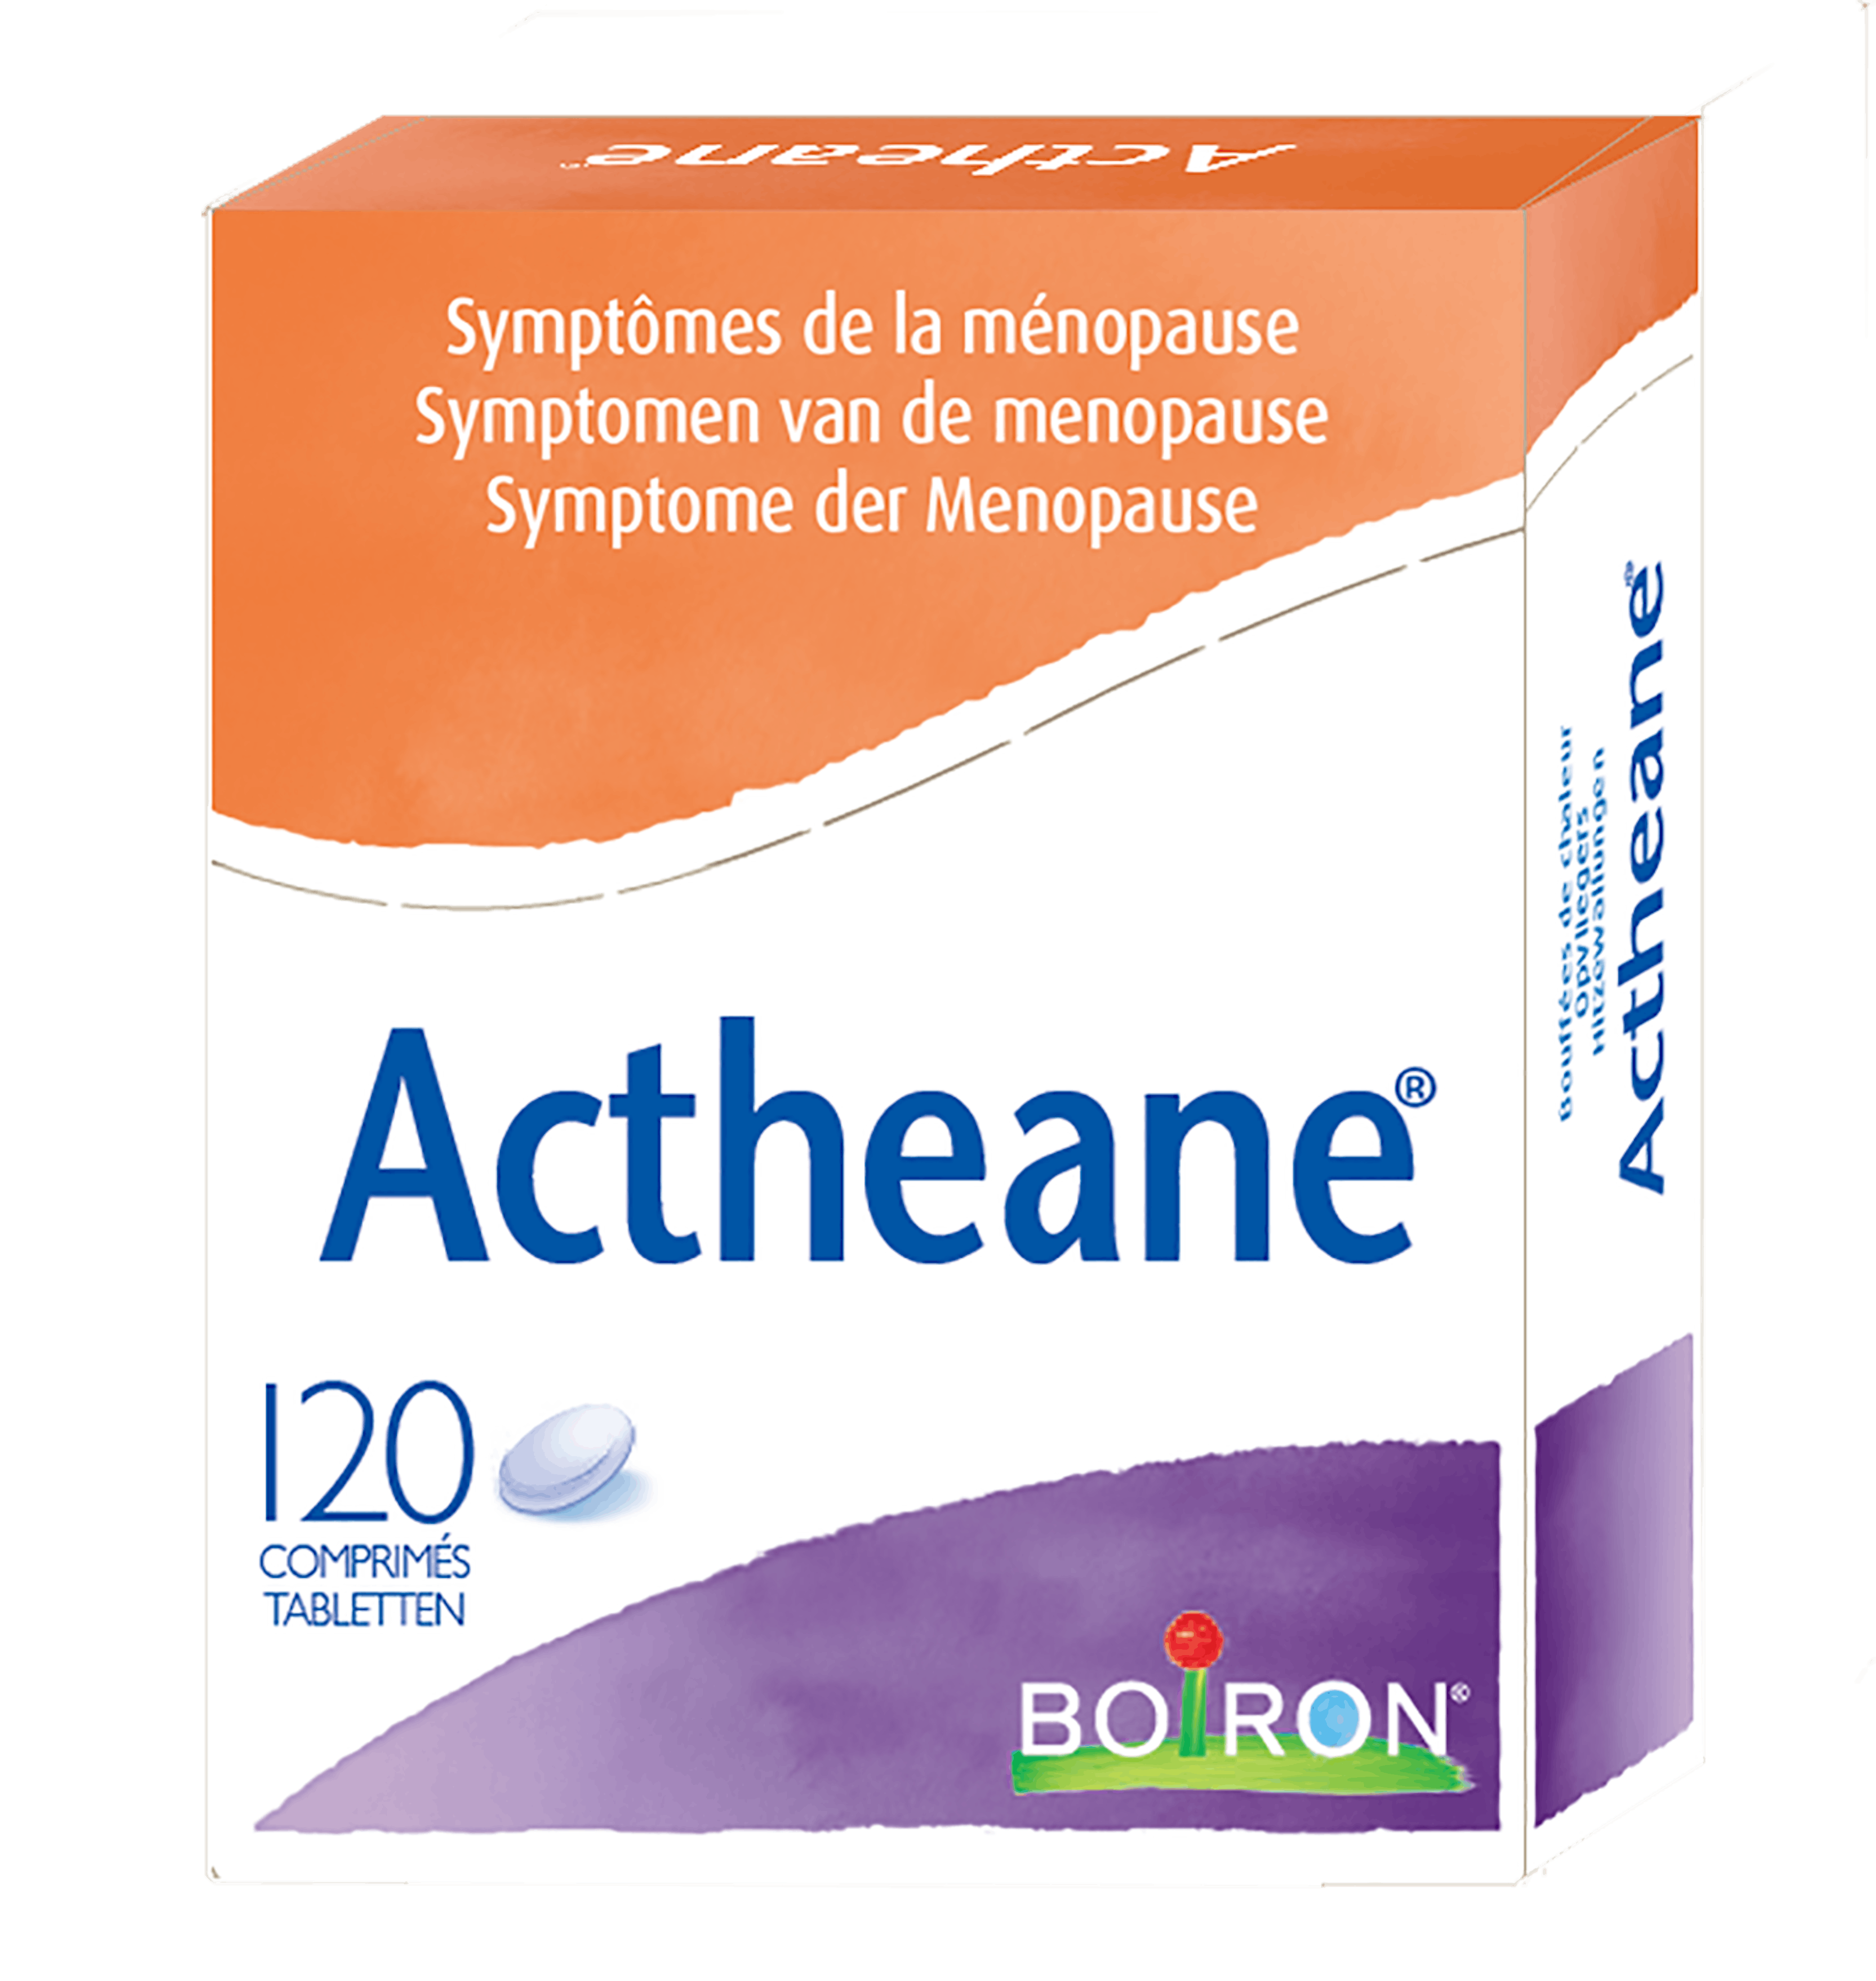 Actheane - onze homeopathische geneesmiddelen specialiteiten - symptomen van meno pauze